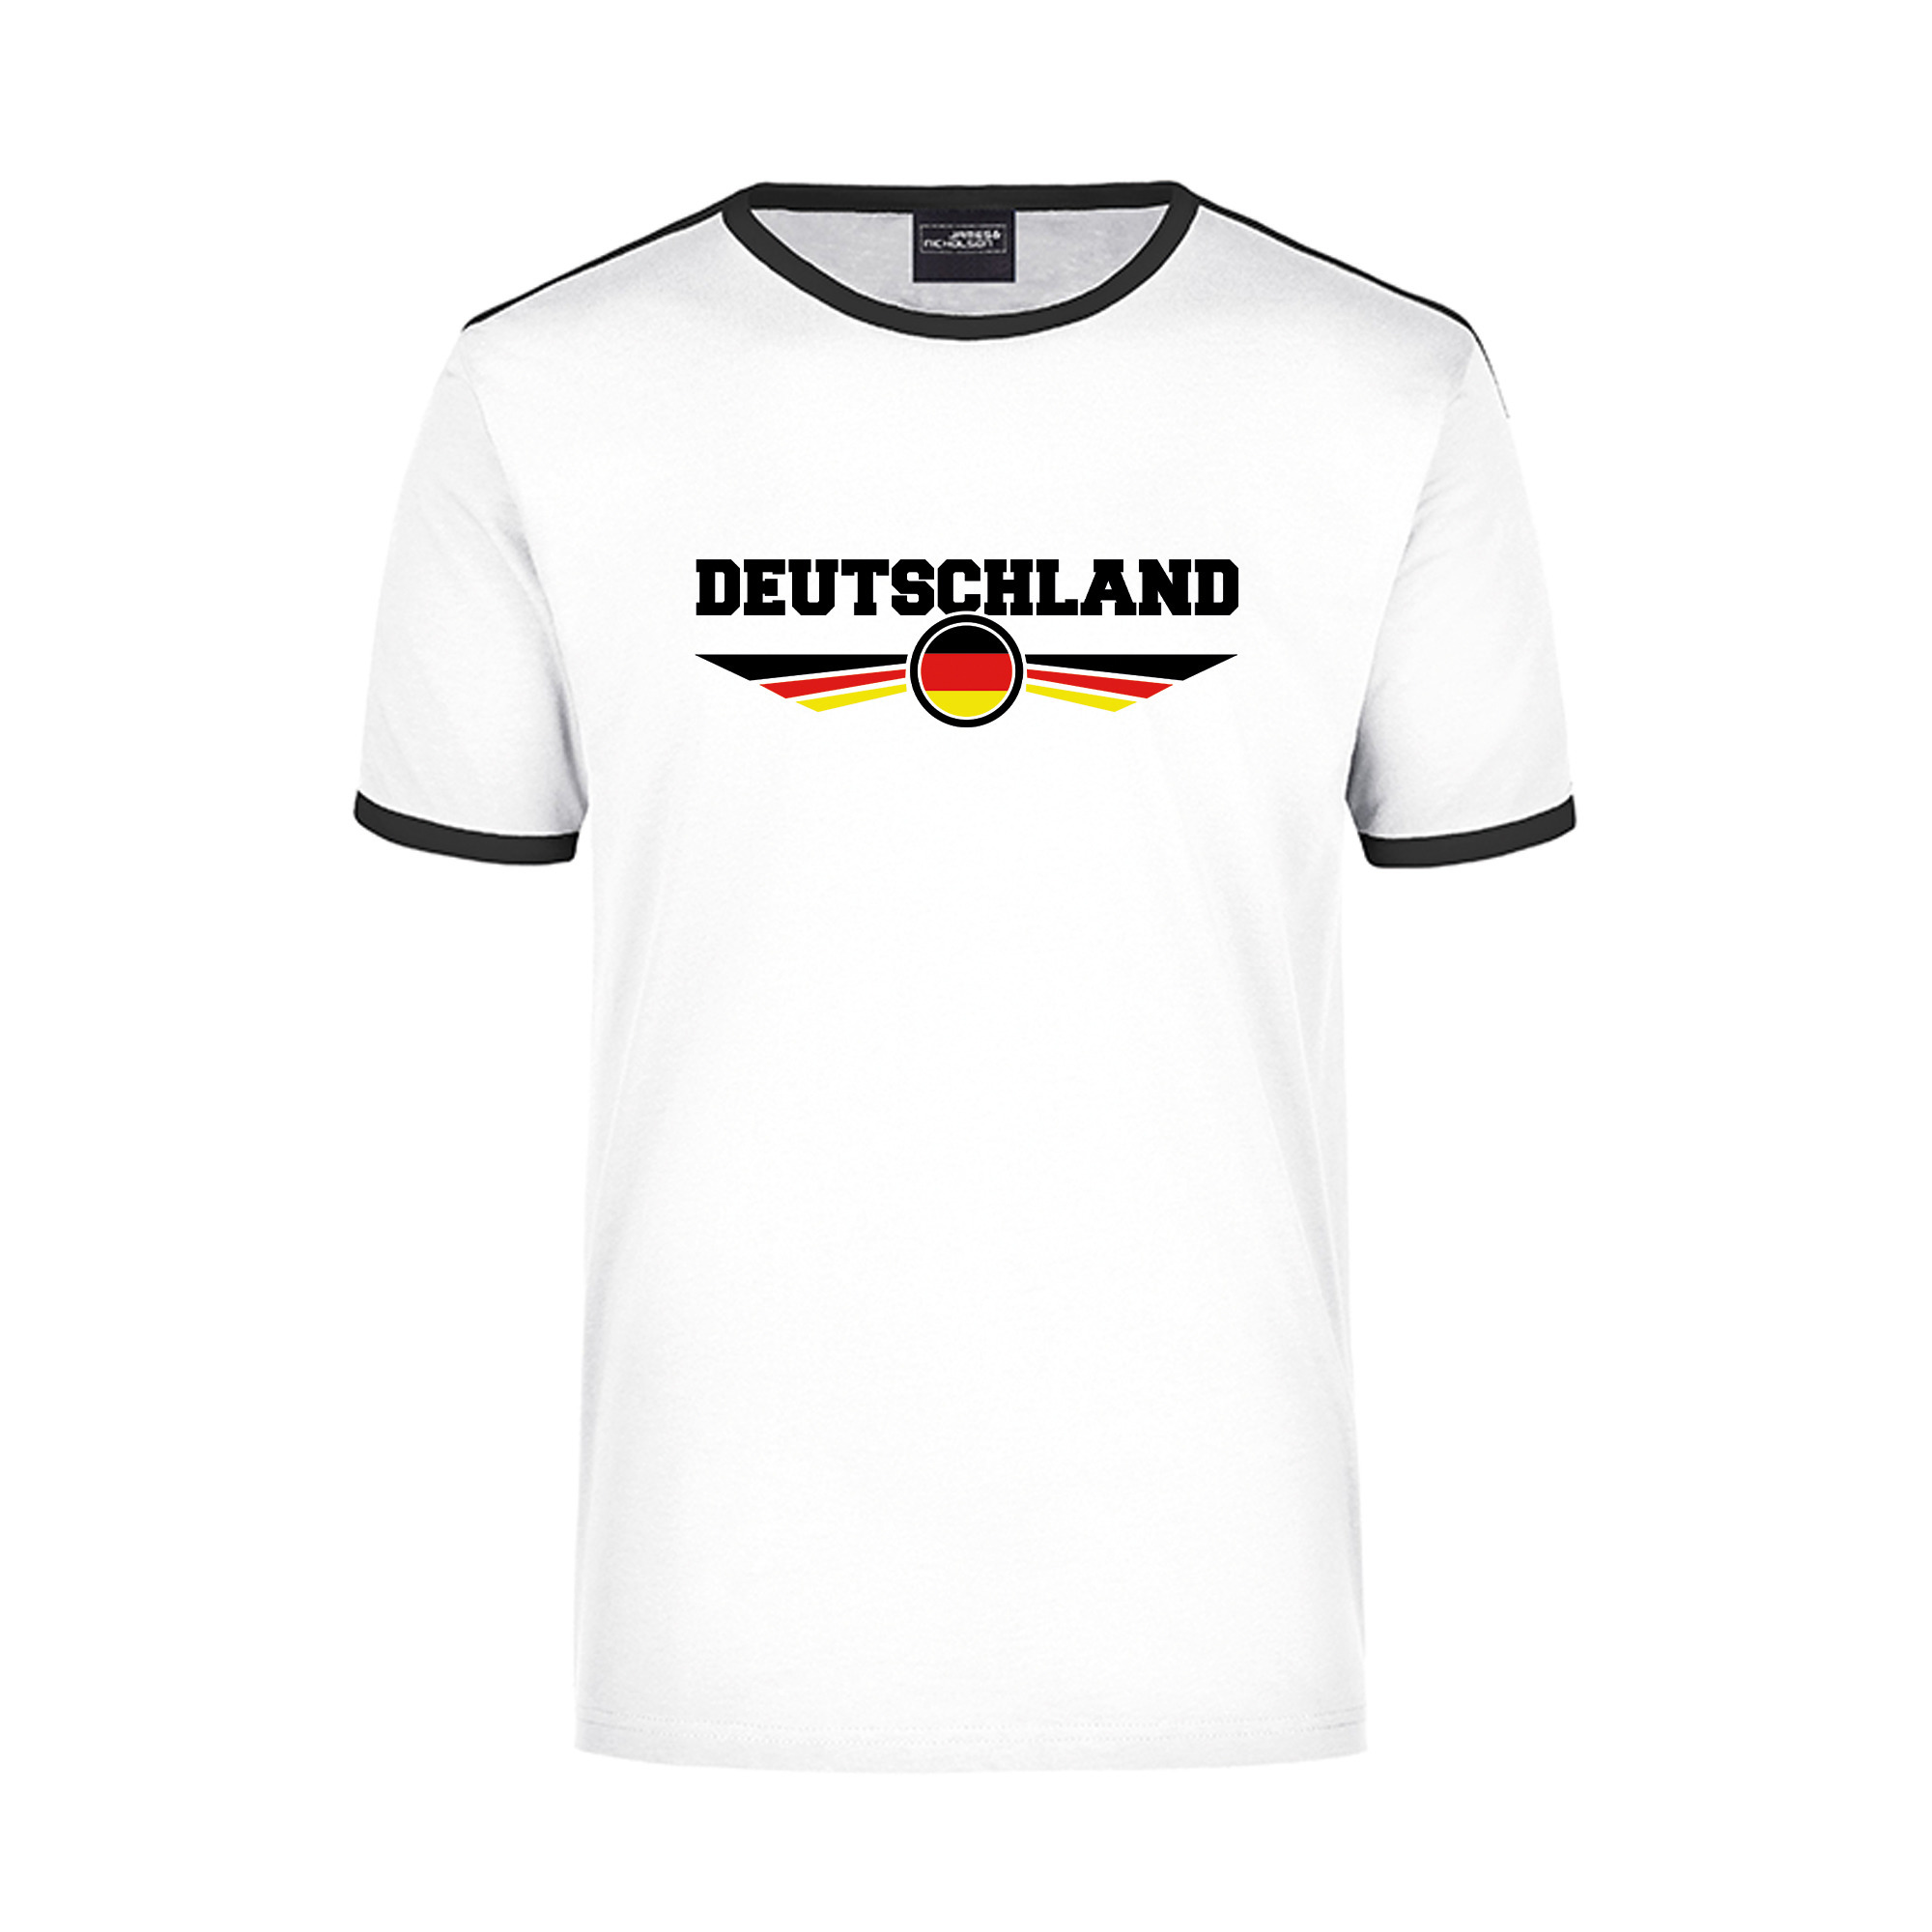 Deutschland wit - zwart ringer landen t-shirt logo met vlag Duitsland voor heren